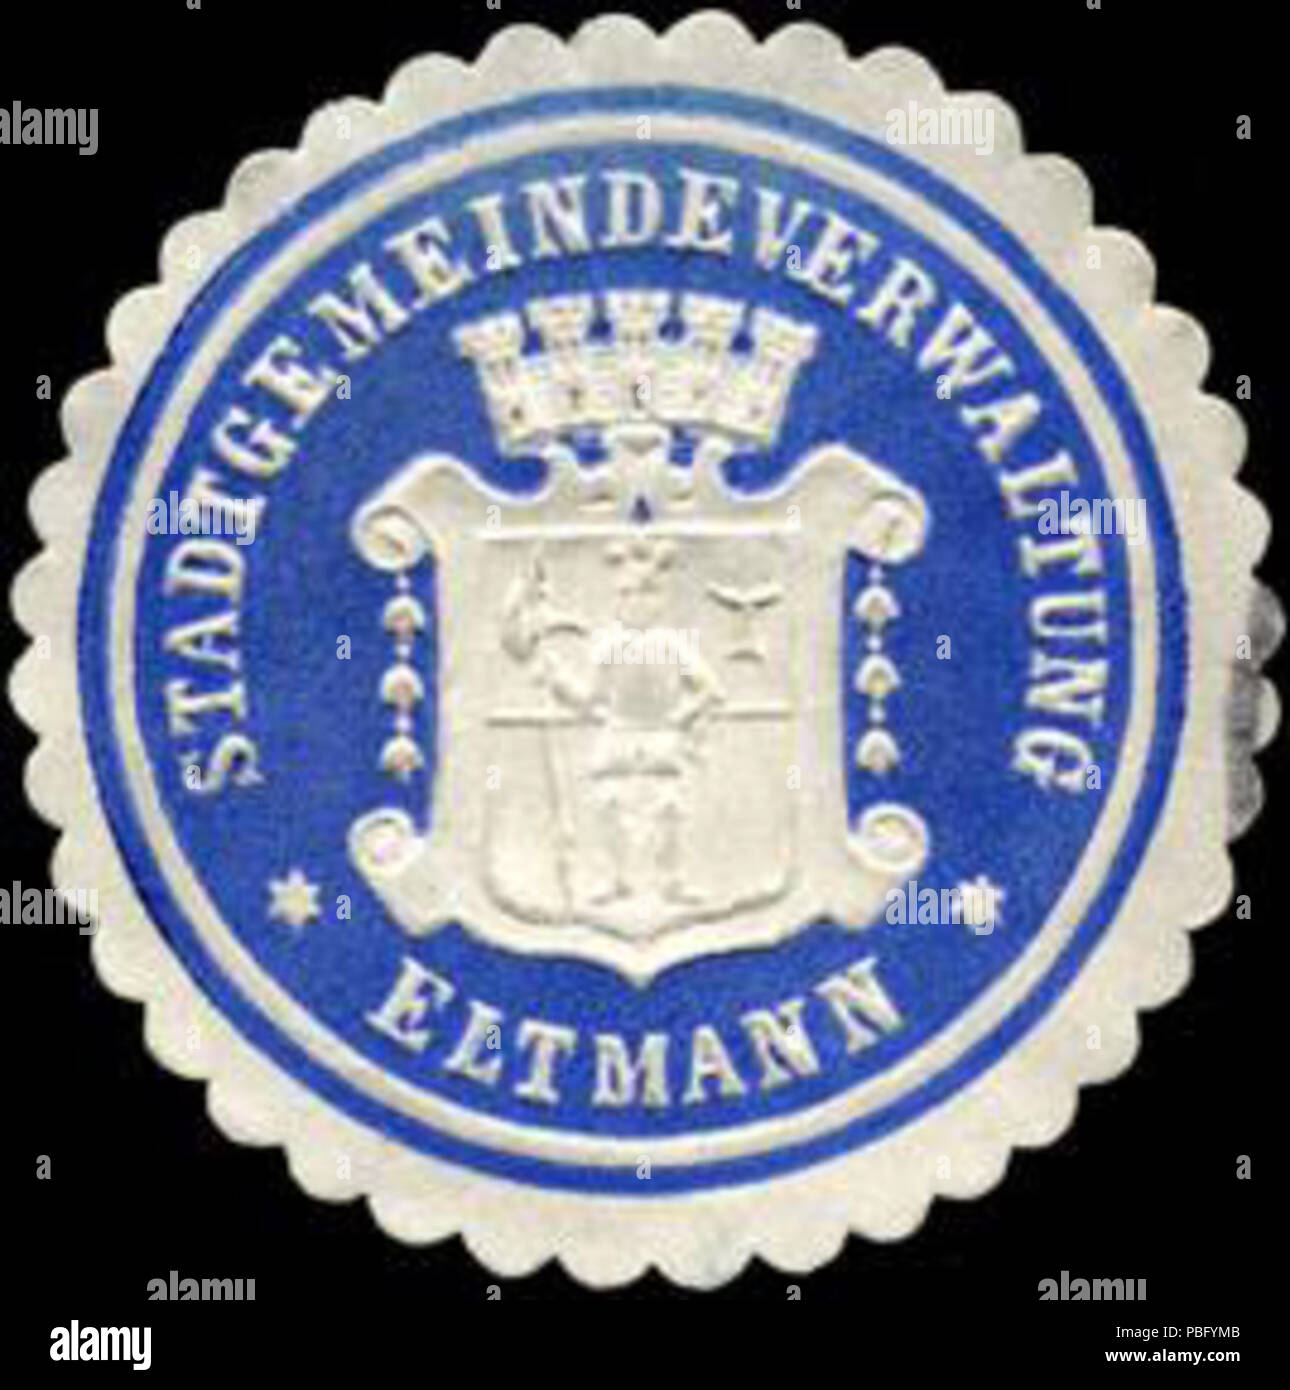 1522 - Eltmann Siegelmarke Stadtgemeindeverwaltung W0226334 Foto de stock